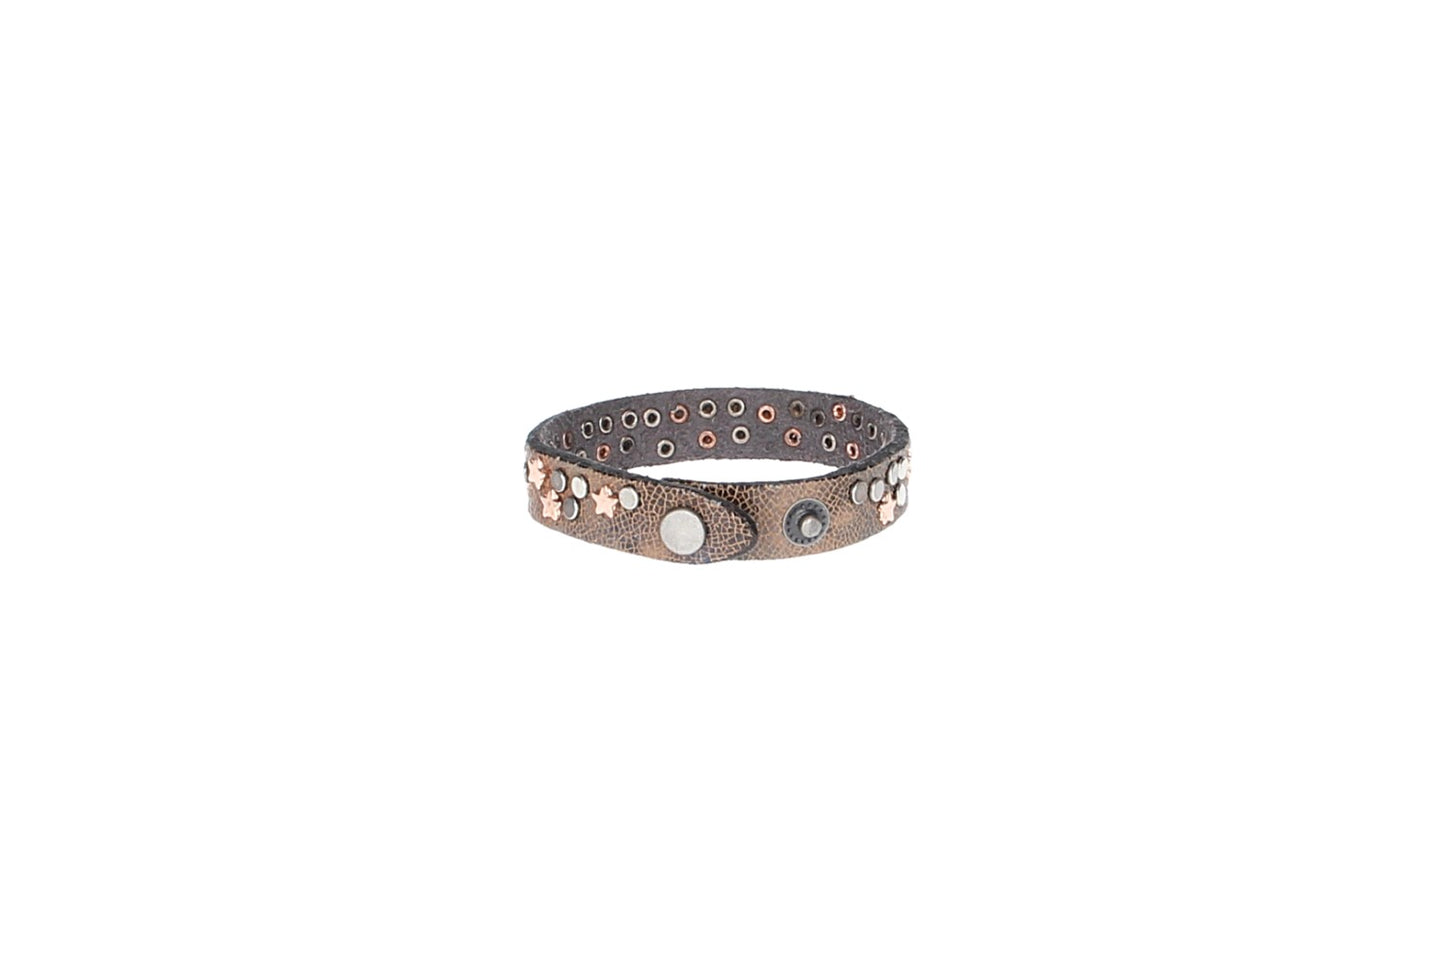 Armband  Bunt|Metallic mit  Sternen aus Leder